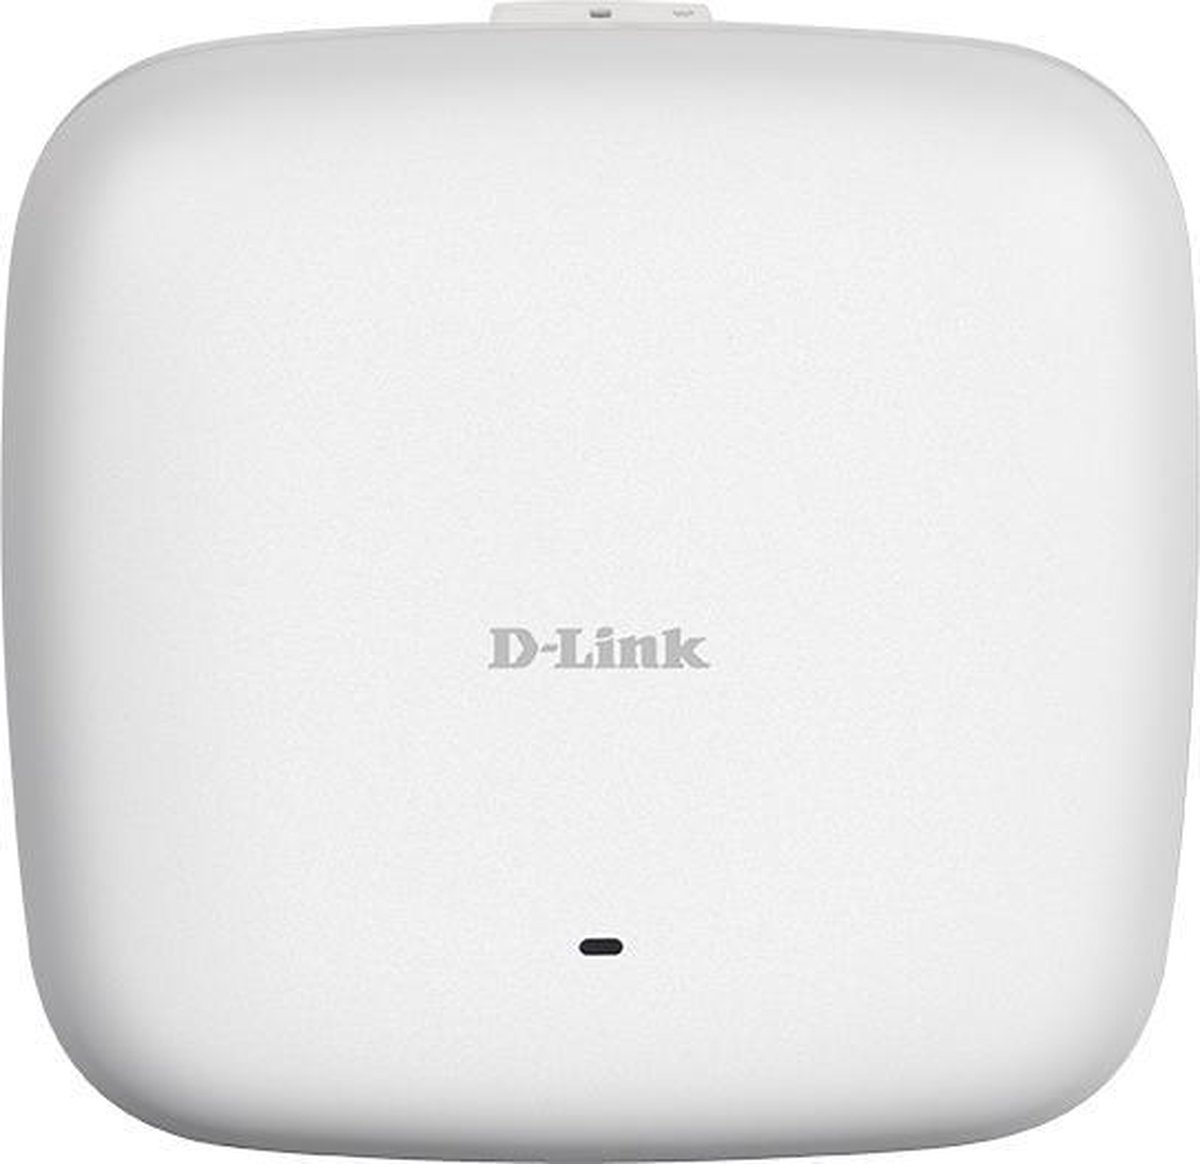 D-link Wireless AC1750 - DAP-2680